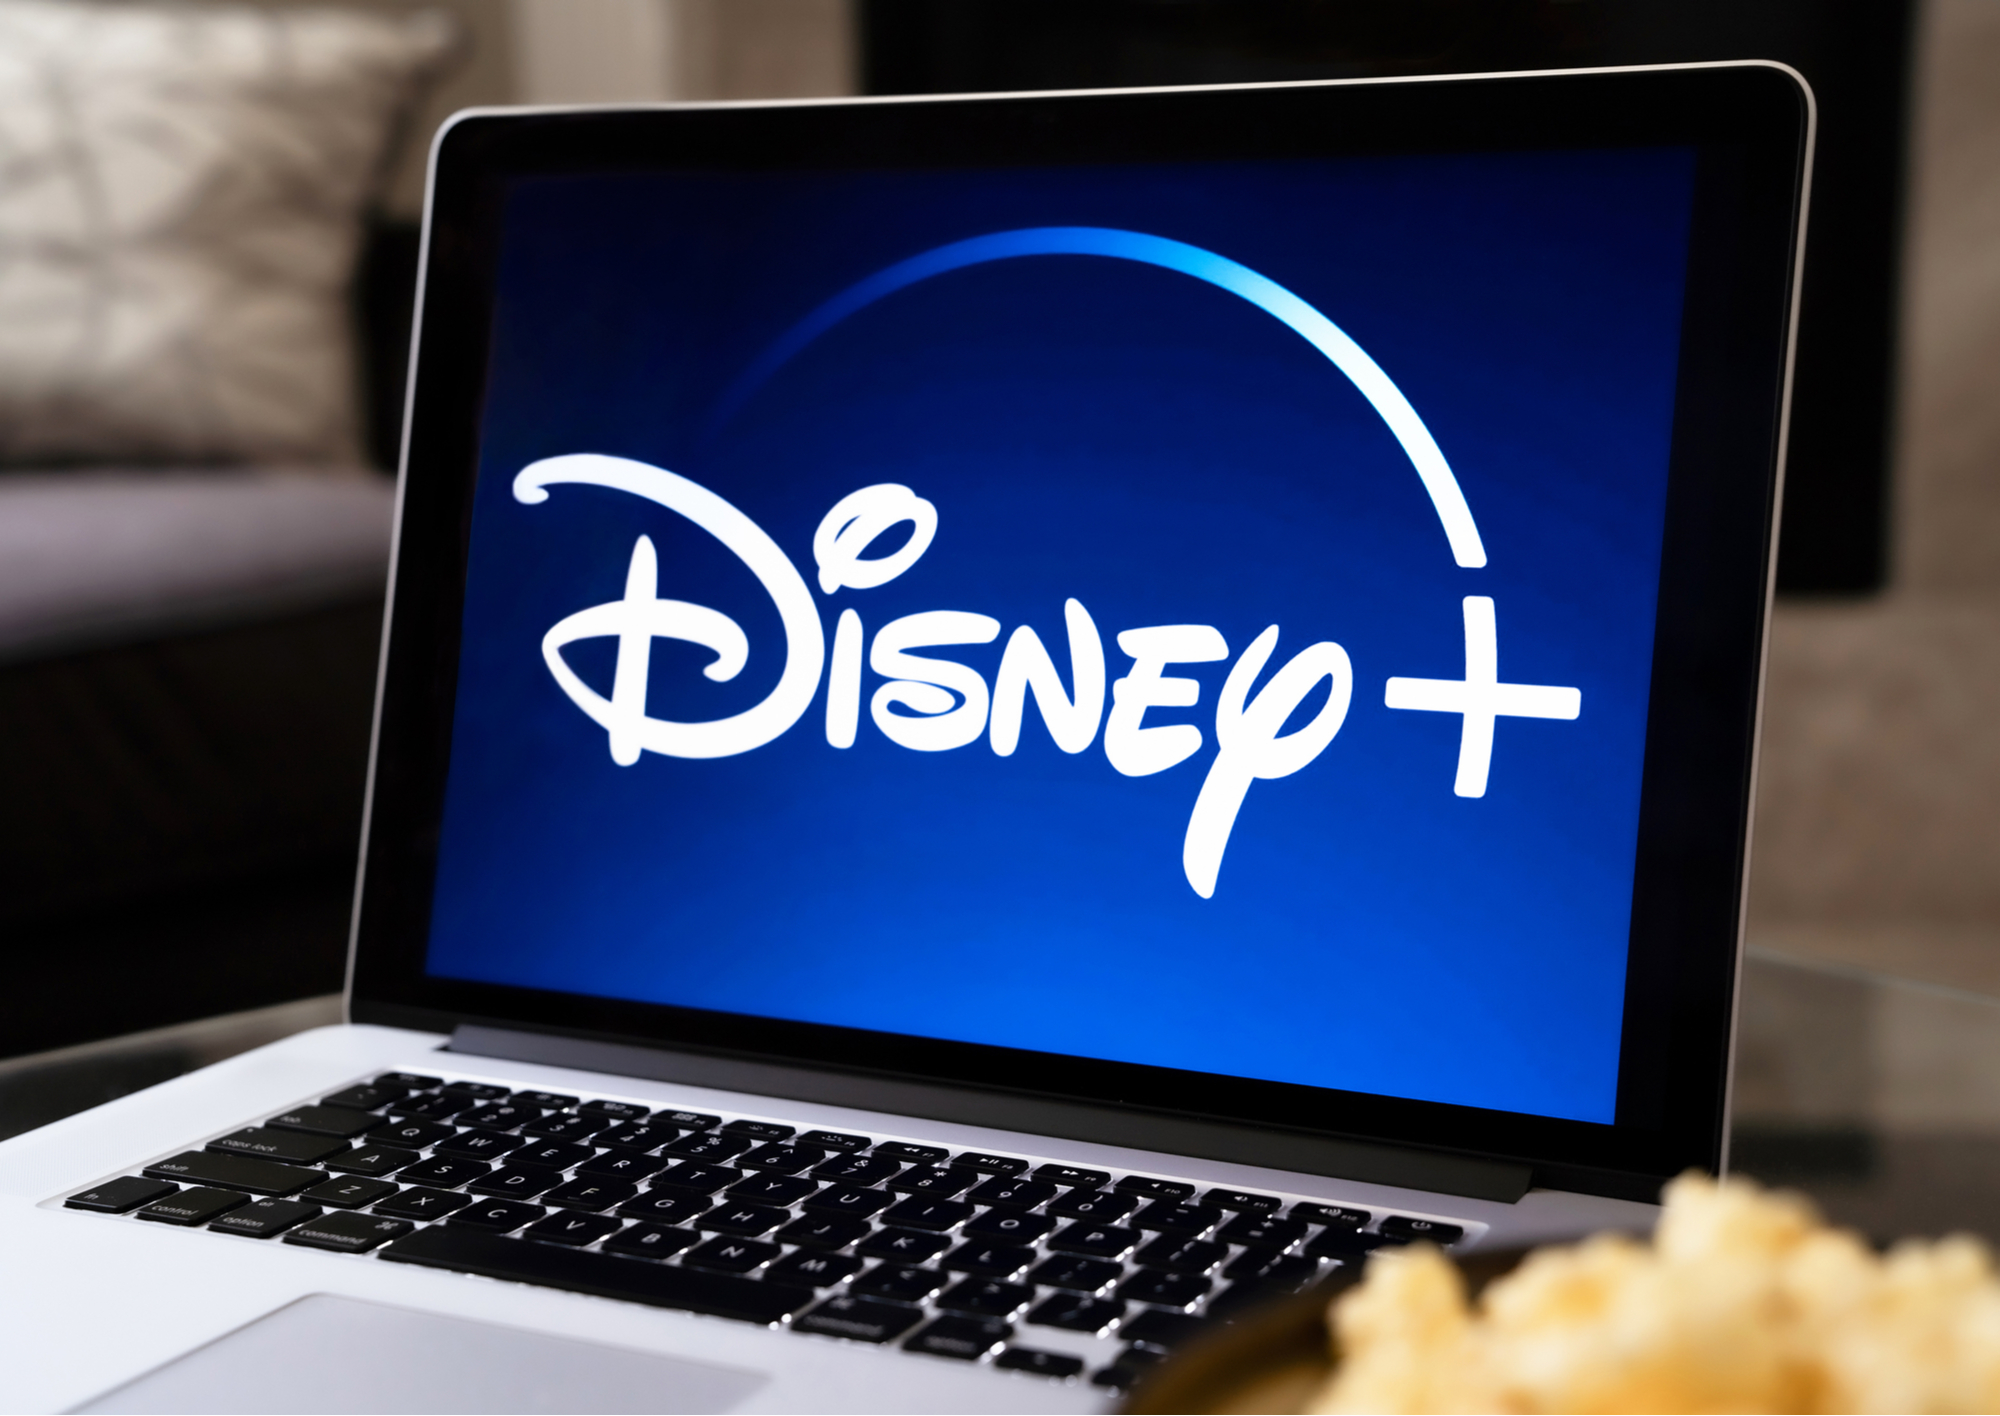 Disney+ passe la barre des 50 millions d'abonnés en seulement 5 mois